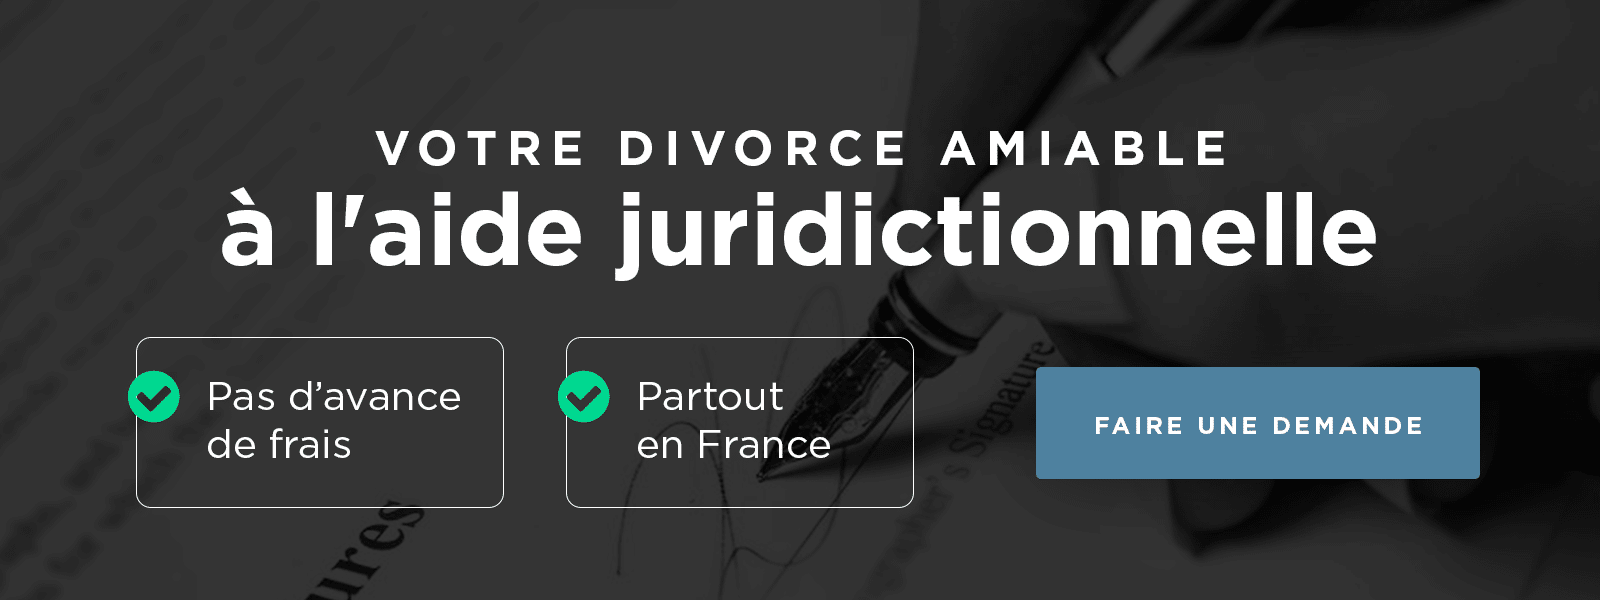 Avocat Divorce Aide Juridictionnelle